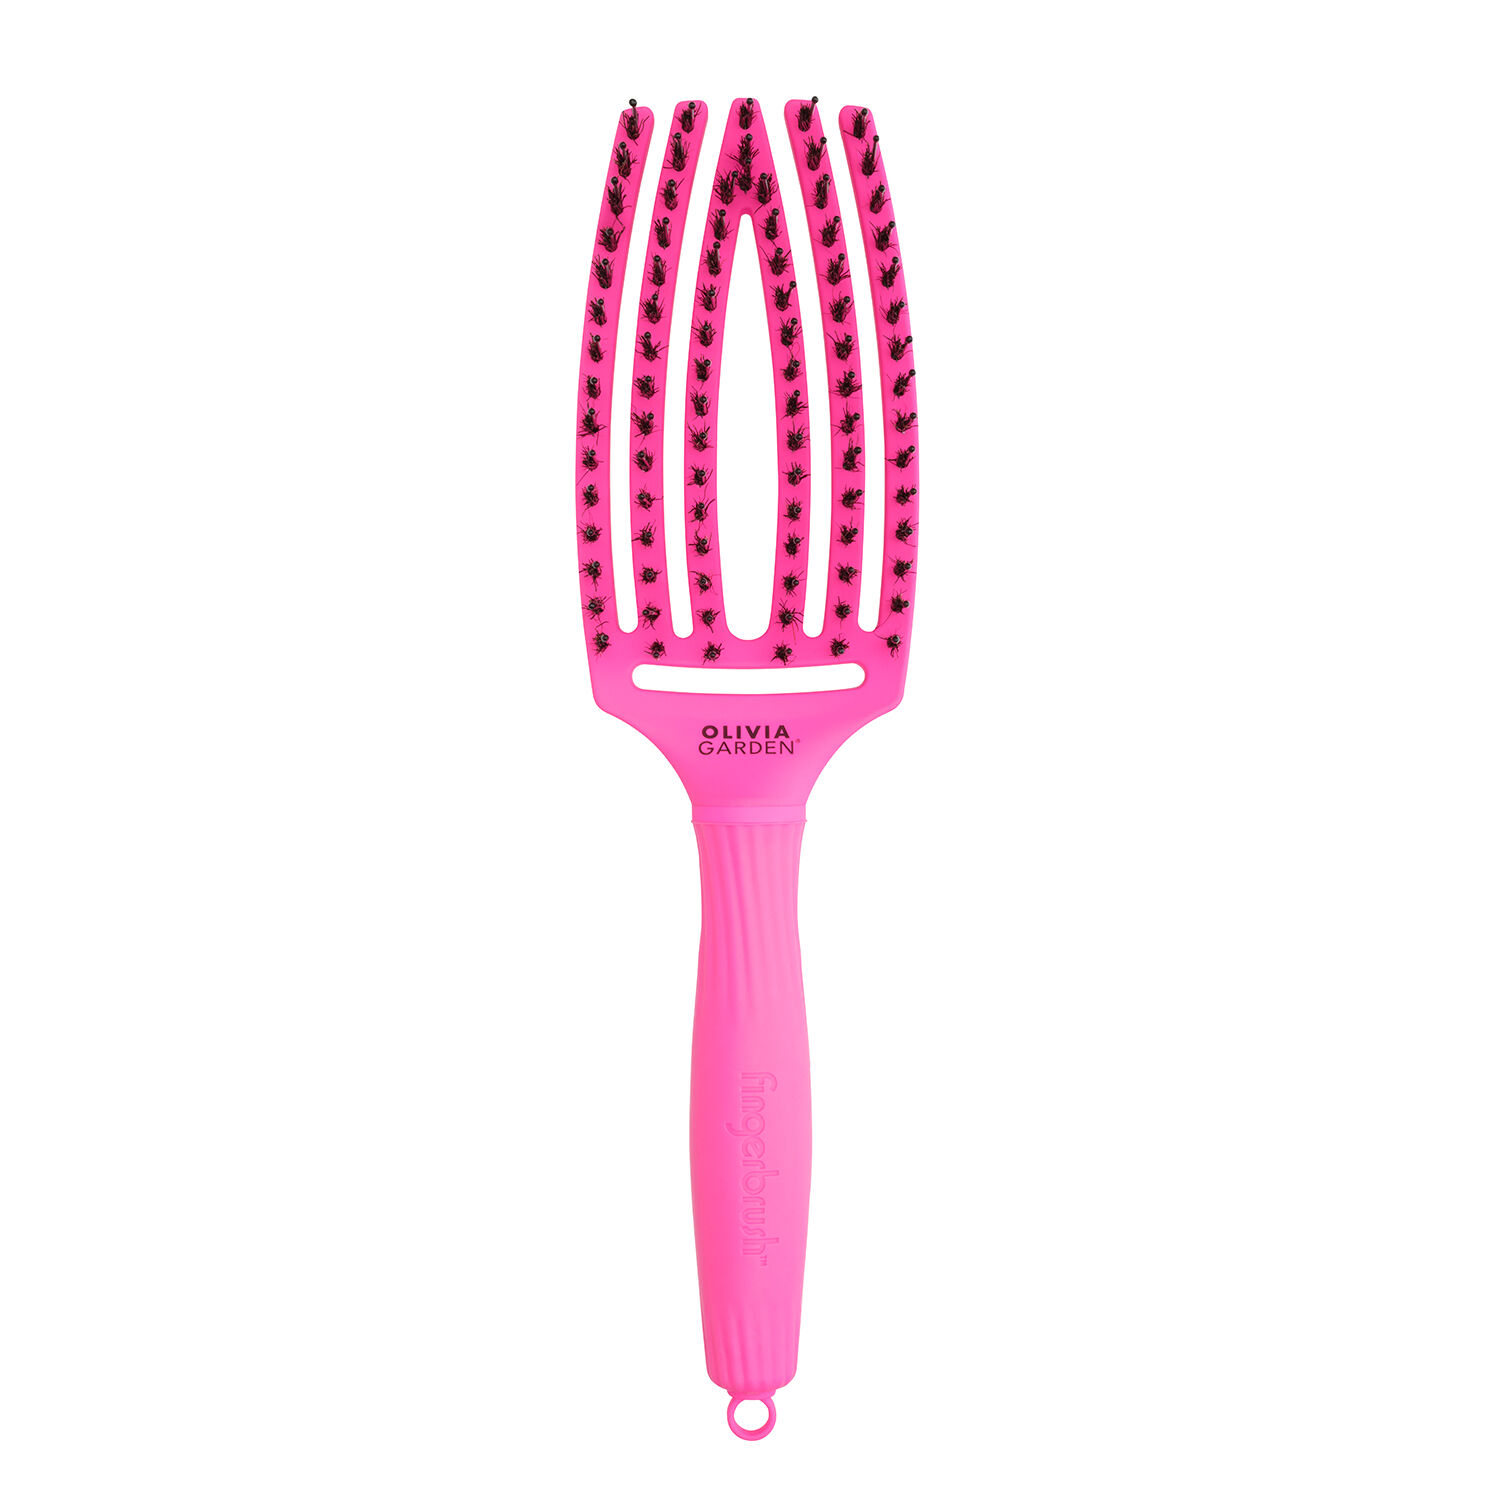 Неоново-розовая расческа Olivia Garden Fingerbrush, 1 шт.